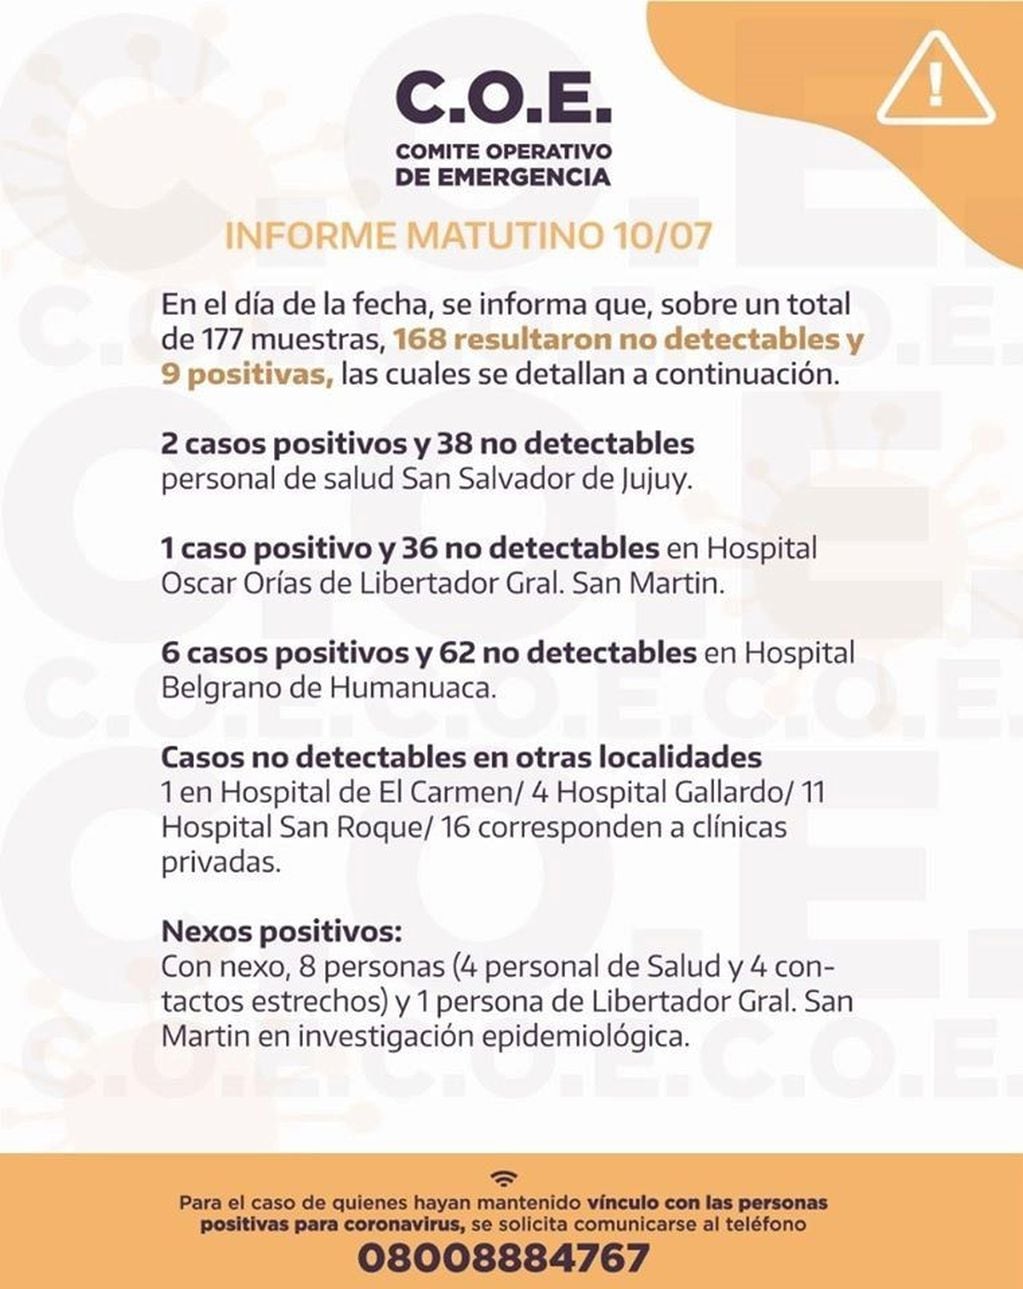 El primer informe del día da cuenta de nueve casos nuevos de Covid-19 detectados en Jujuy.